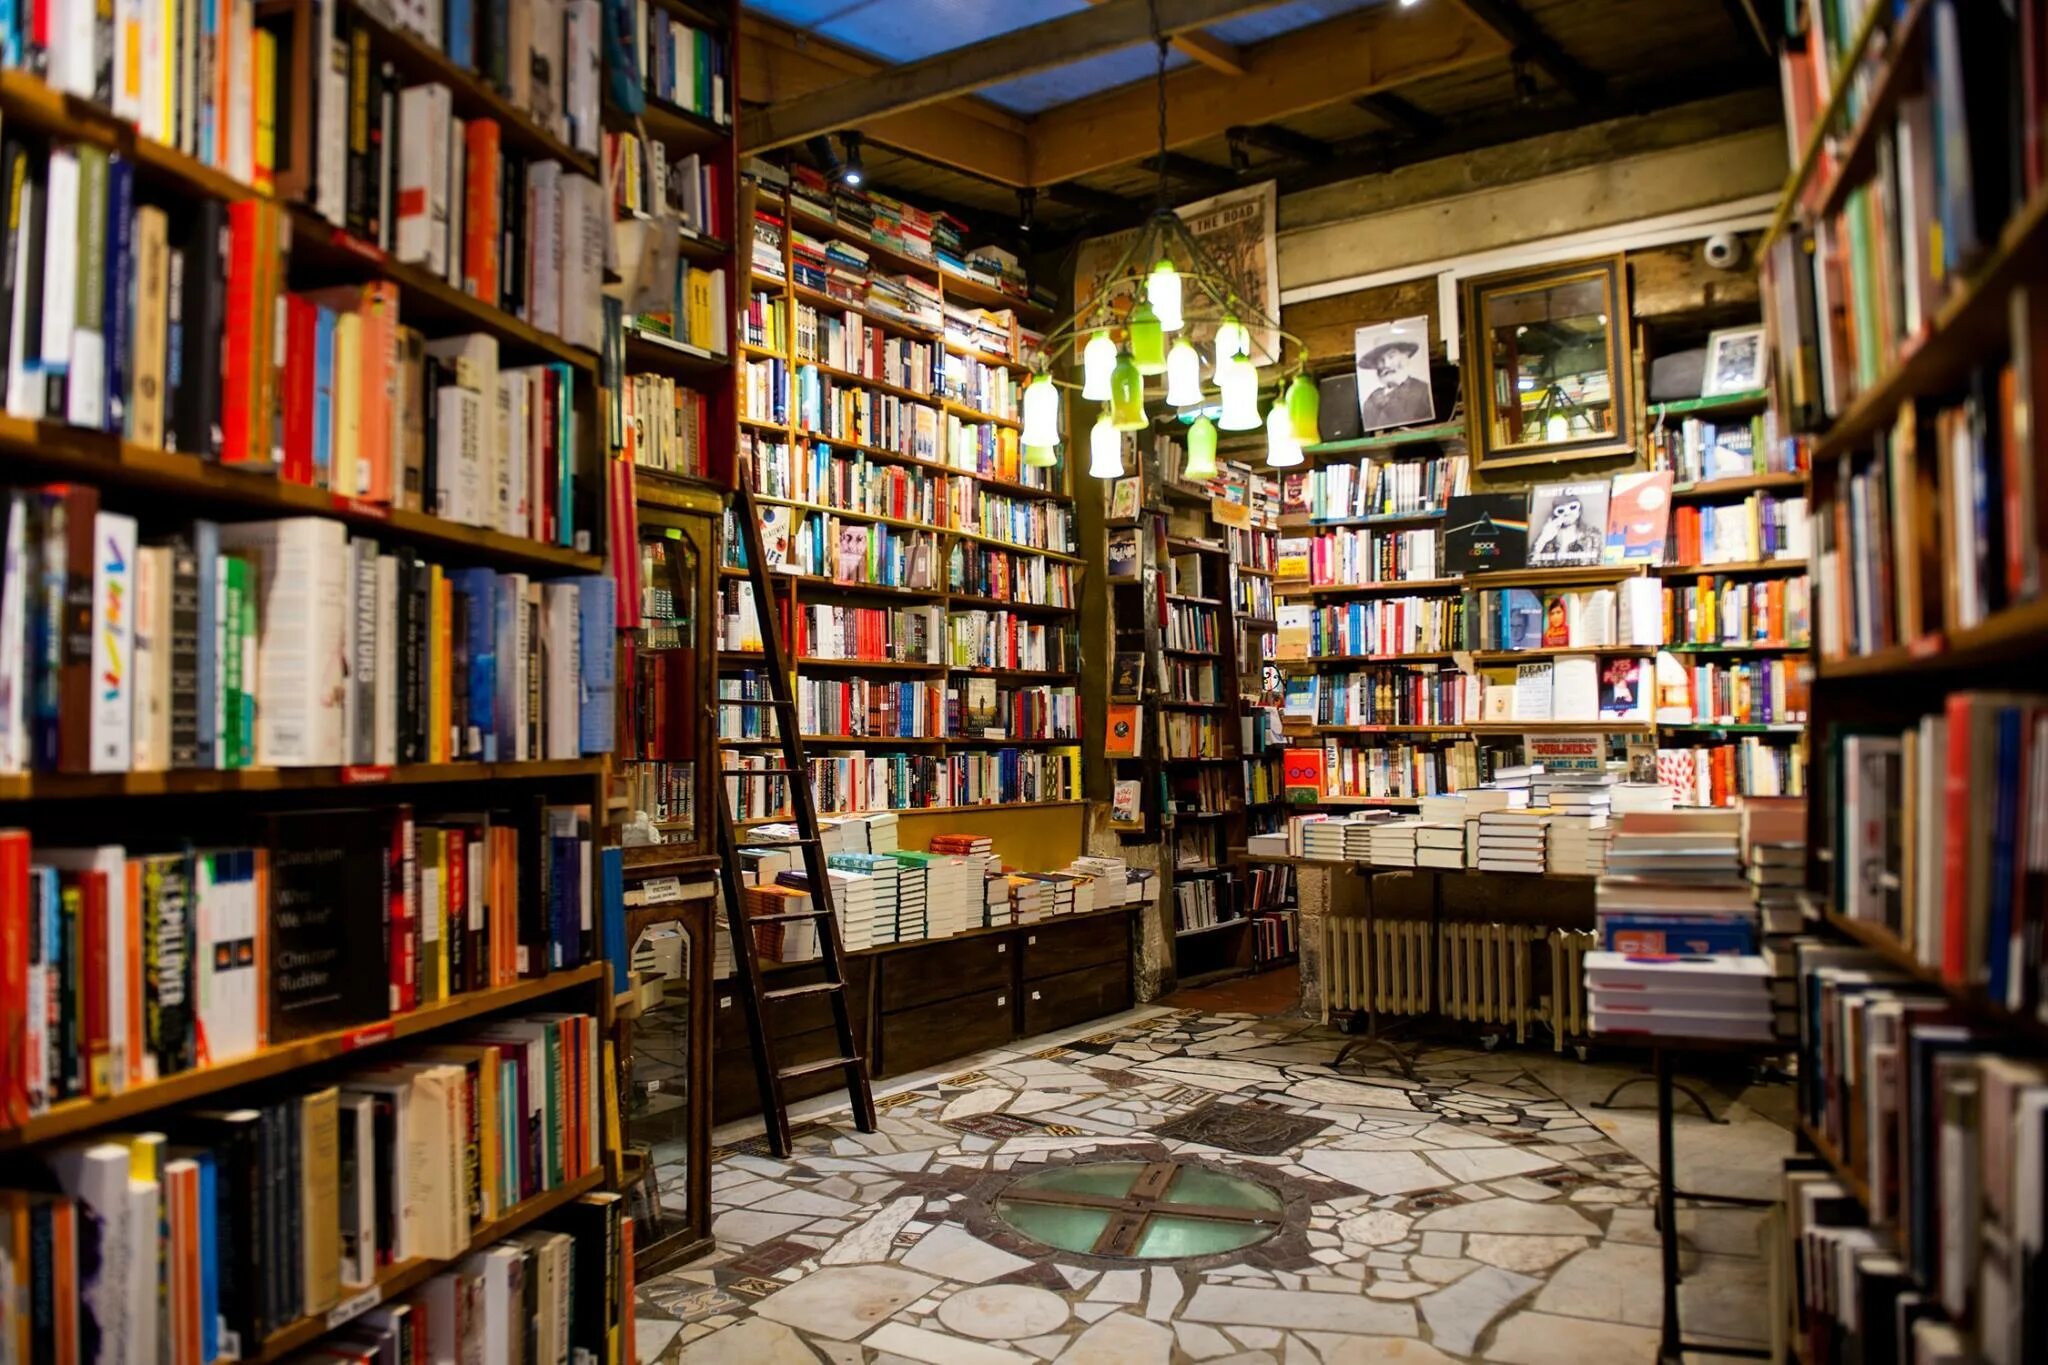 Best books shop. Шекспир и компания книжный магазин. Шекспир и компания книжный магазин Париж. «Шекспир и компания», Париж, Франция. Шекспир и компания книжный магазин Париж внутри.